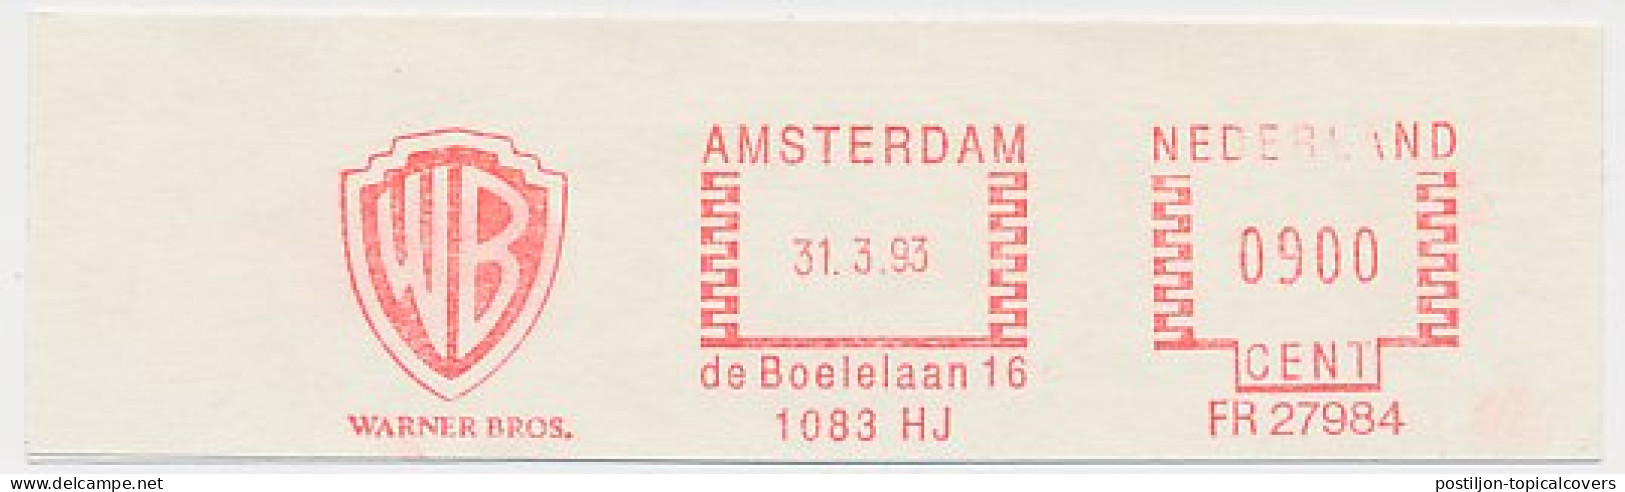 Meter Cut Netherlands 1993 - Frama 27984 Warner Bros. - Cinéma